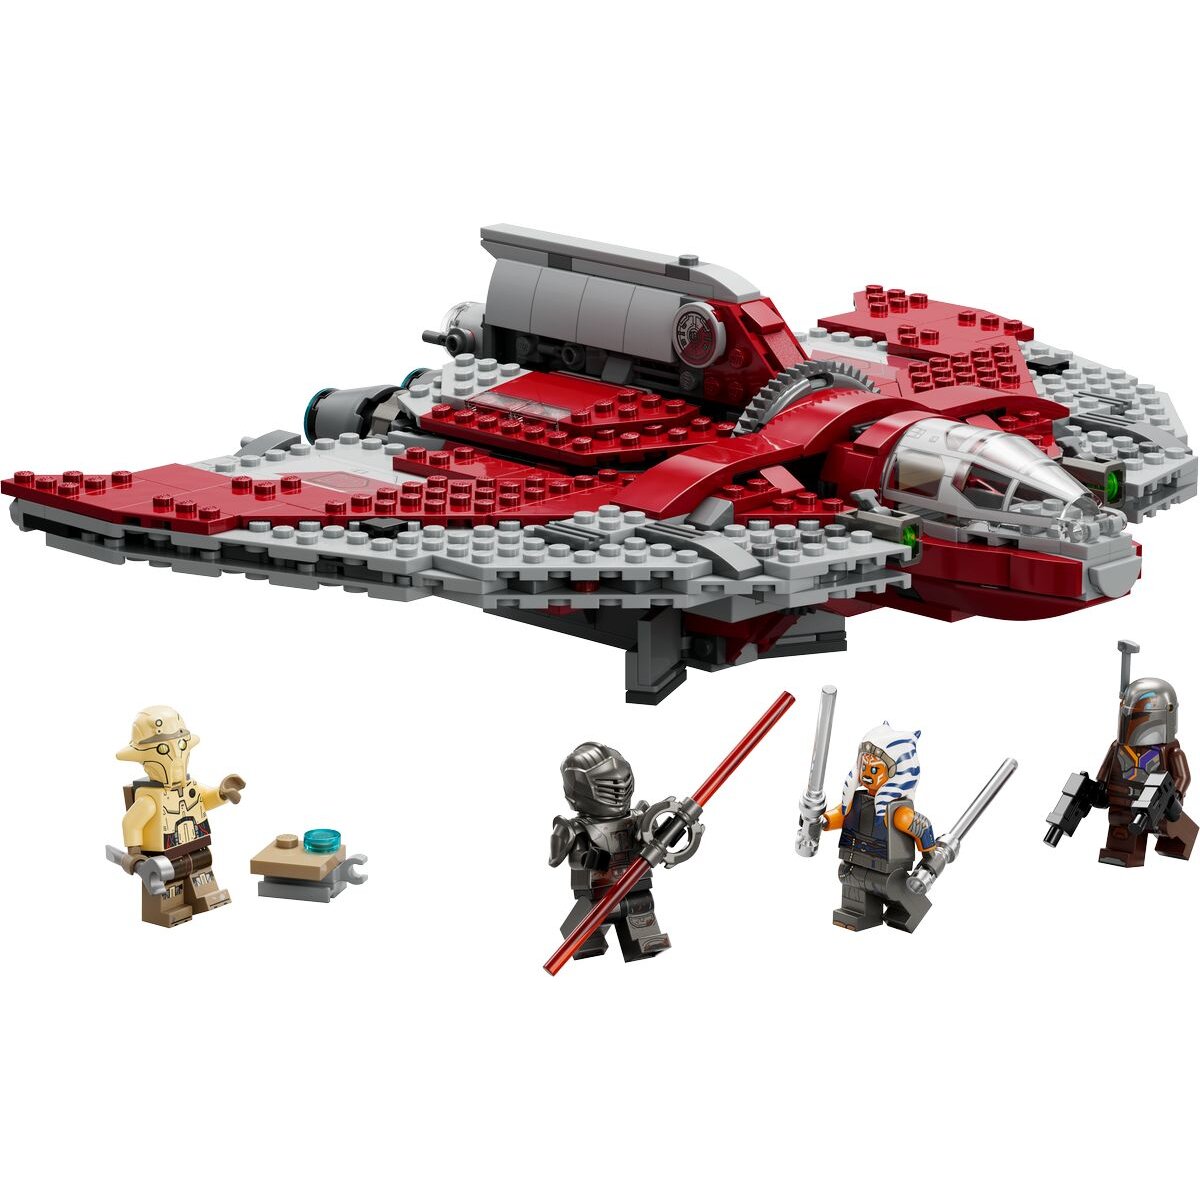 LEGO® Star Wars™ 75362 Ahsoka Tanos T-6 Jedi Shuttle, Raumschiff-Spielzeug